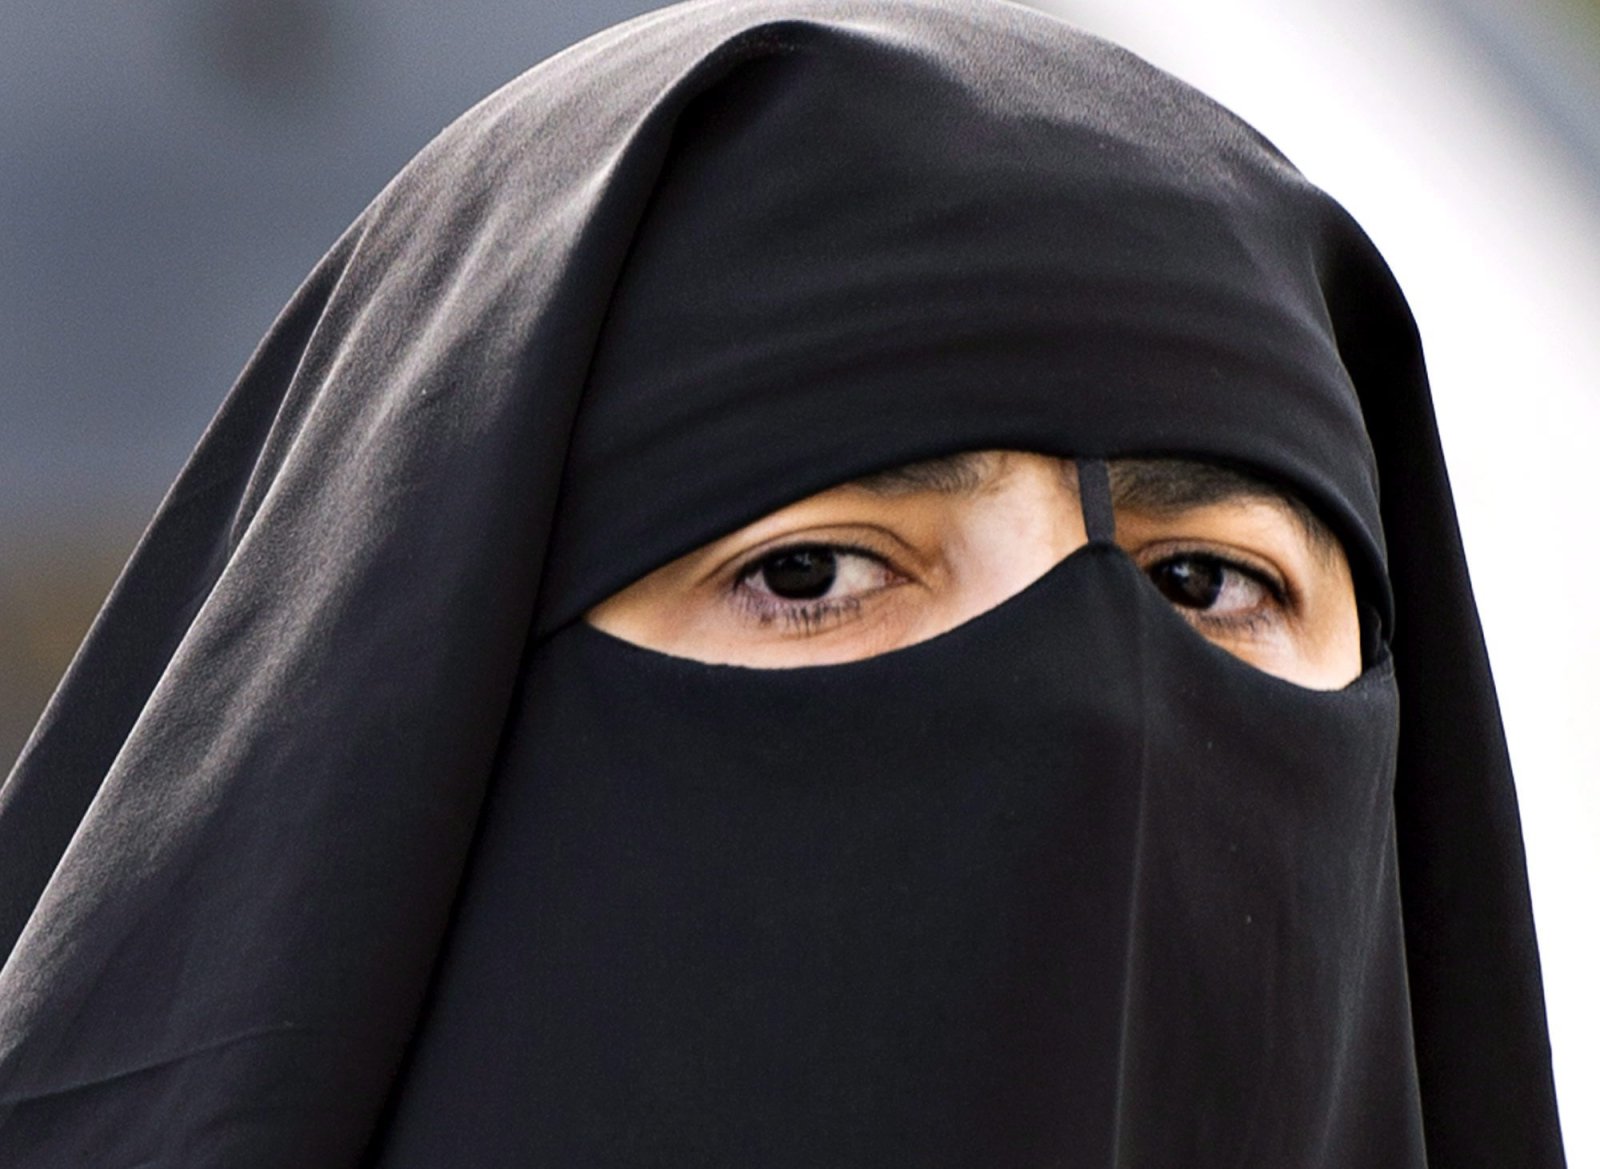 Ahmadiyya Muslim community hails Federal Court niqab  